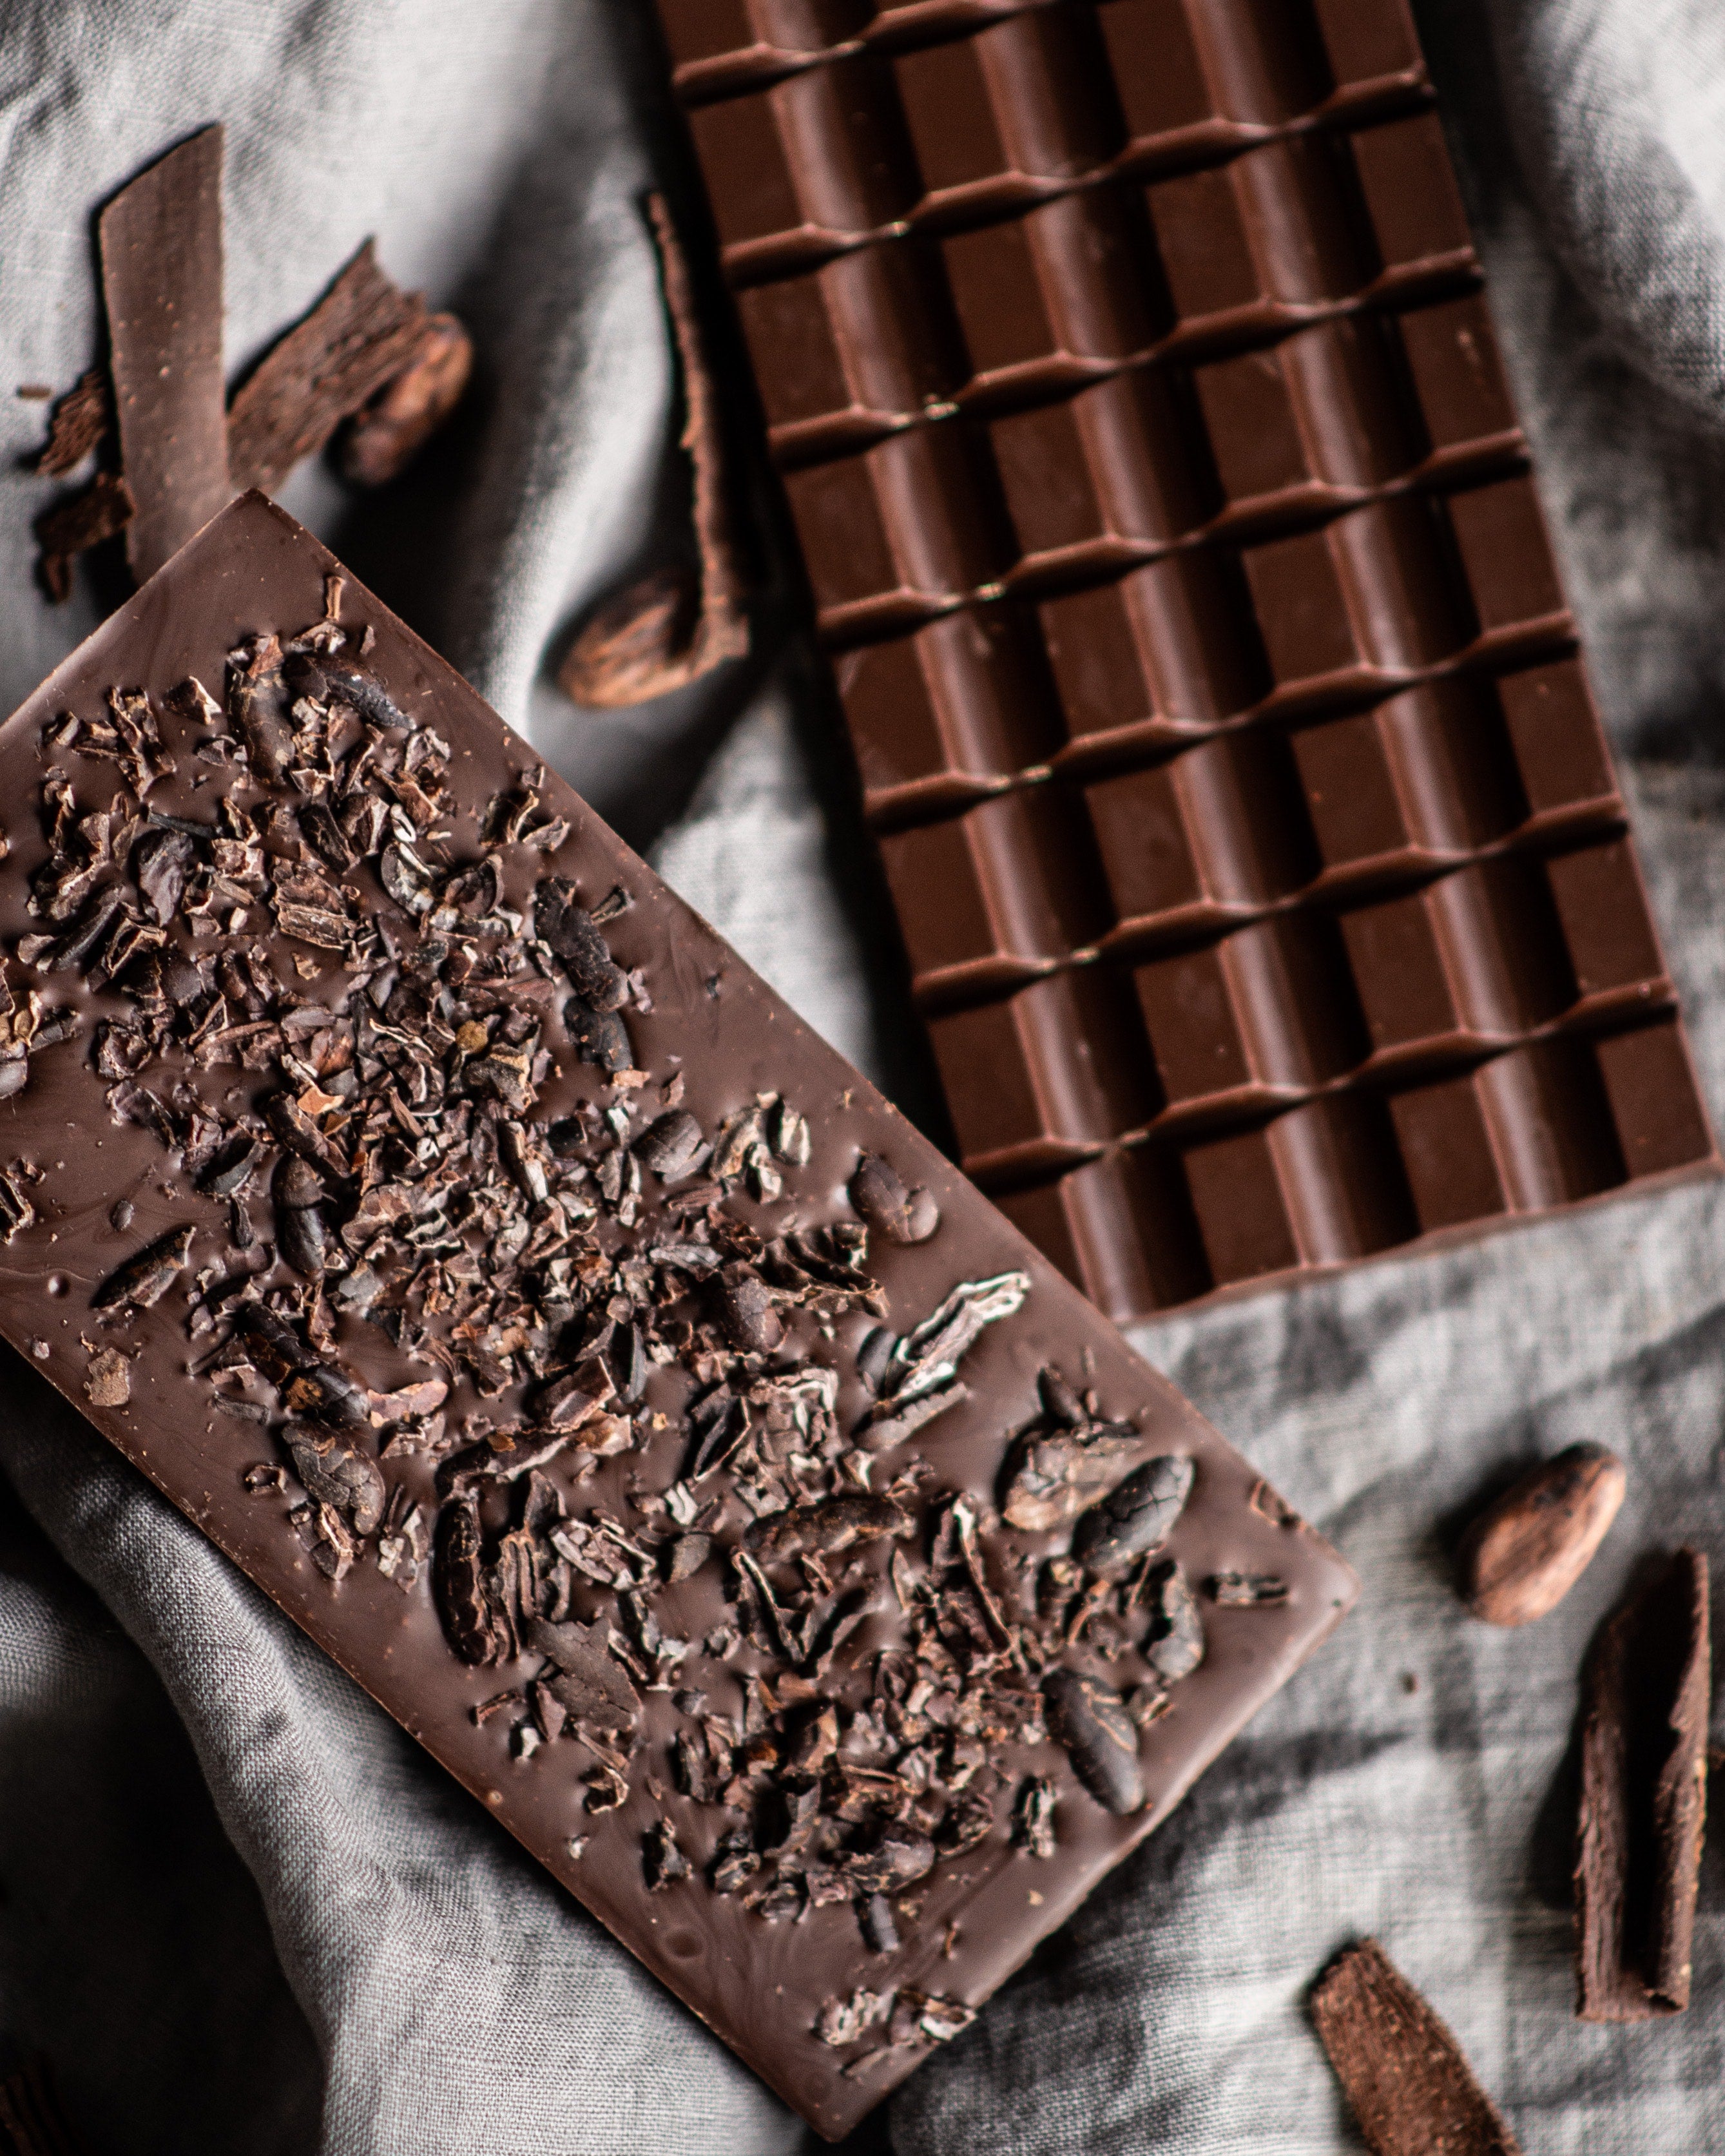 Quelles sont les vertus reconnues du chocolat de qualité ?